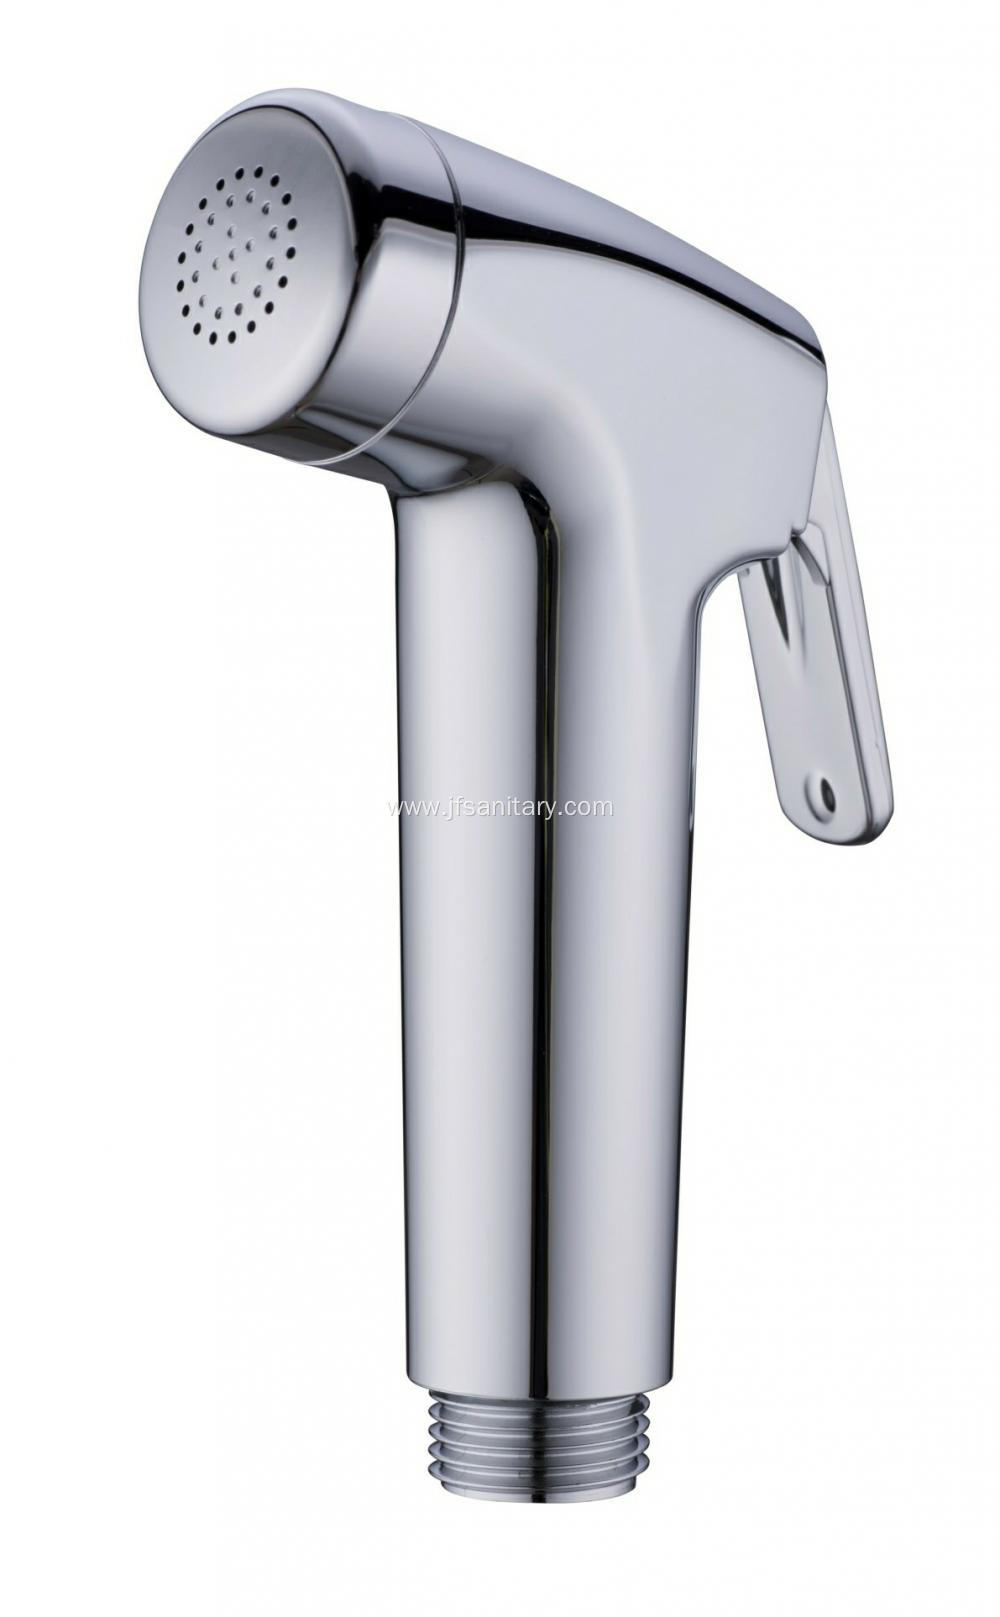 Chrome Plastic ABS Bidet Telephone Shower For Toilet